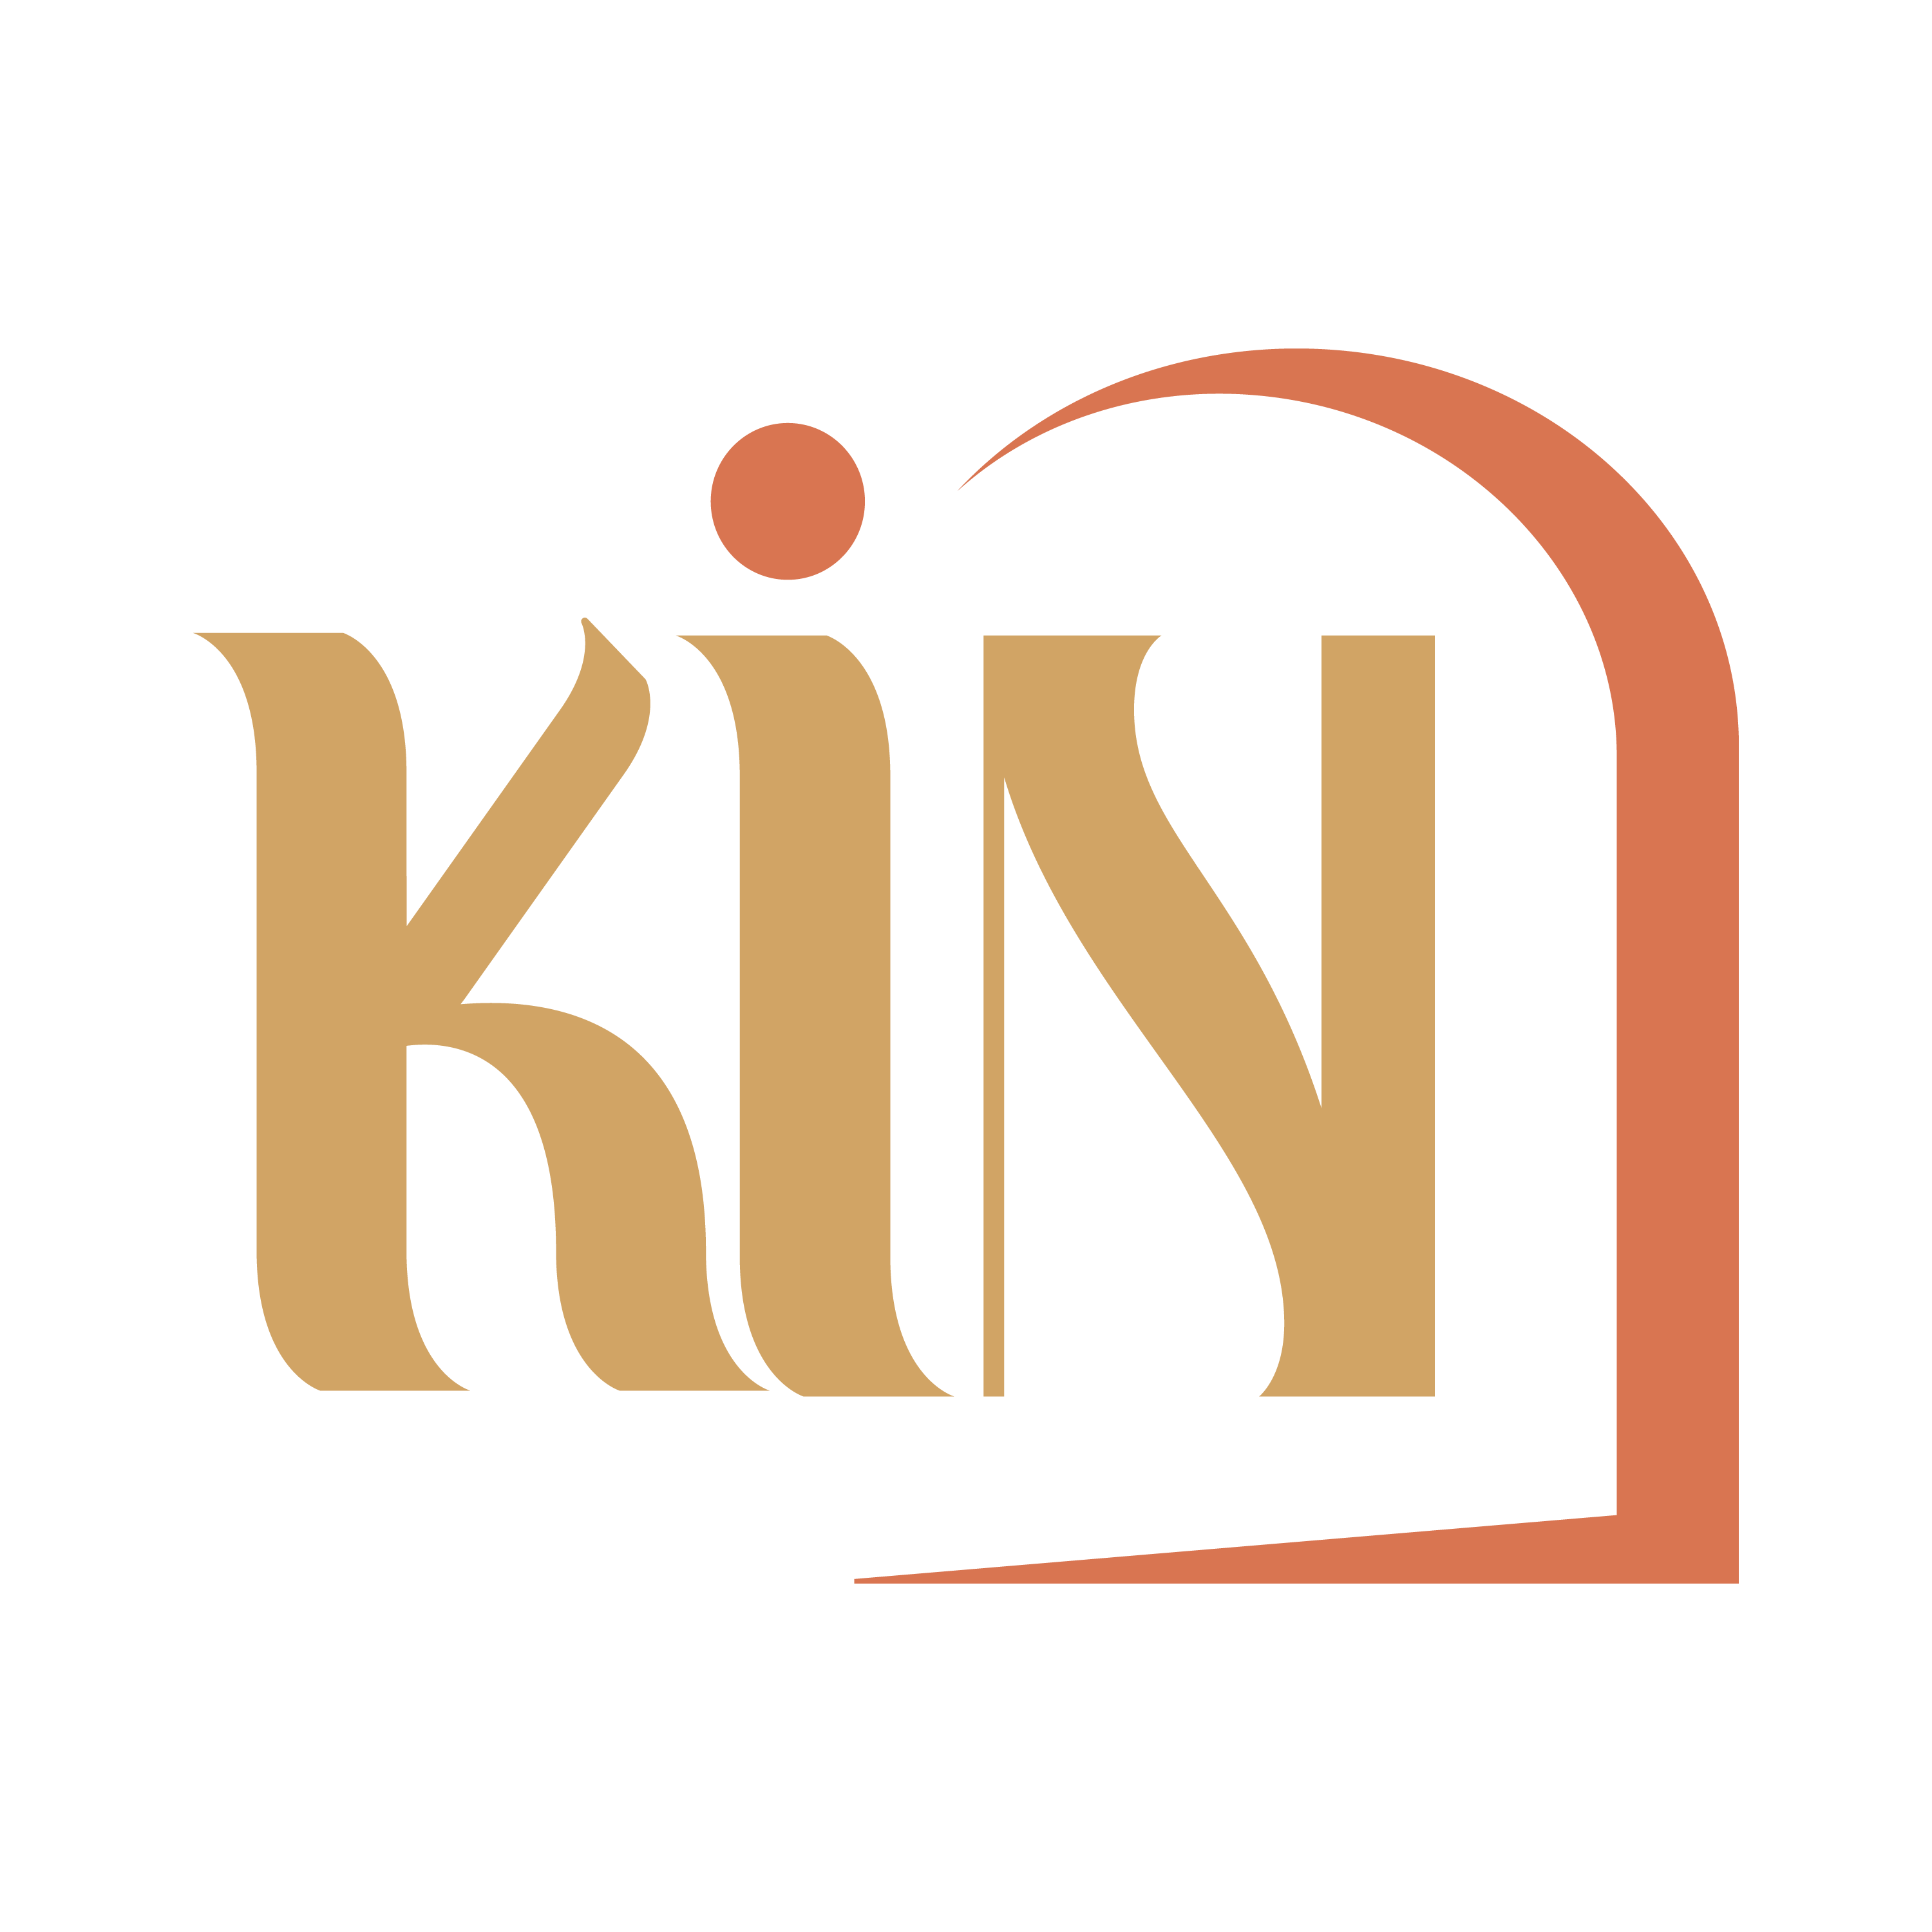 Kin Hotel